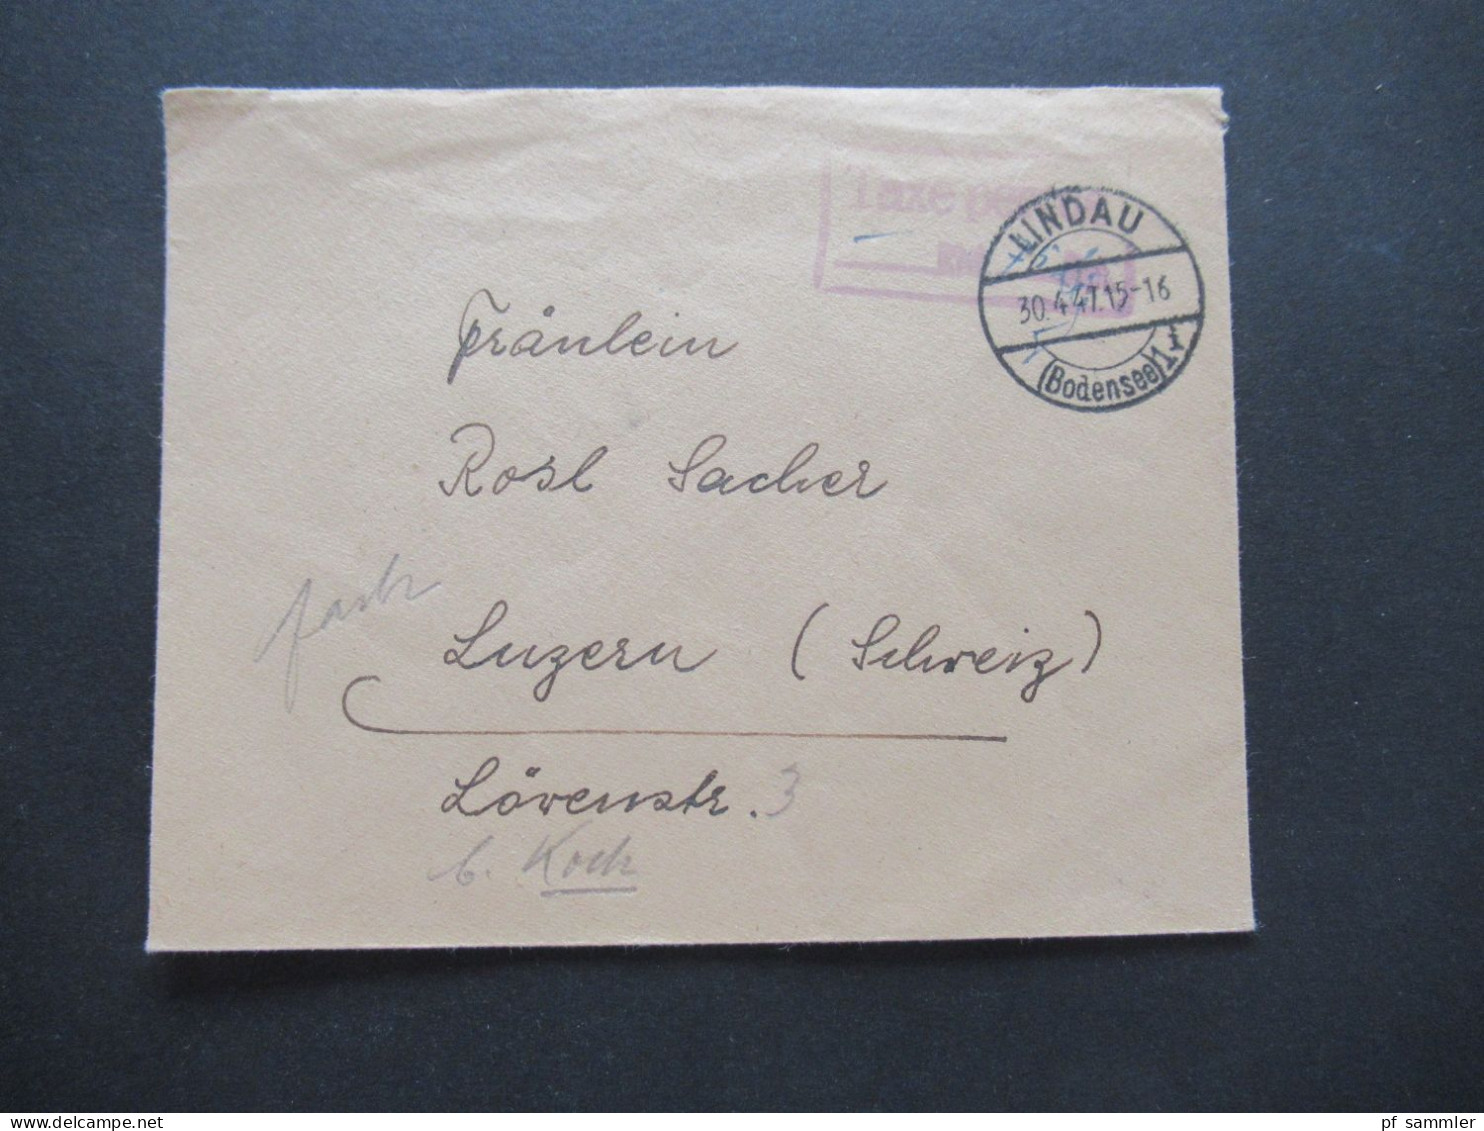 1947 Französische Zone Stp. Lindau Bodensee Und Violetter Ra2 Taxe Percue Auslandsbrief Nach Luzern Schweiz / Gebühr Bez - General Issues